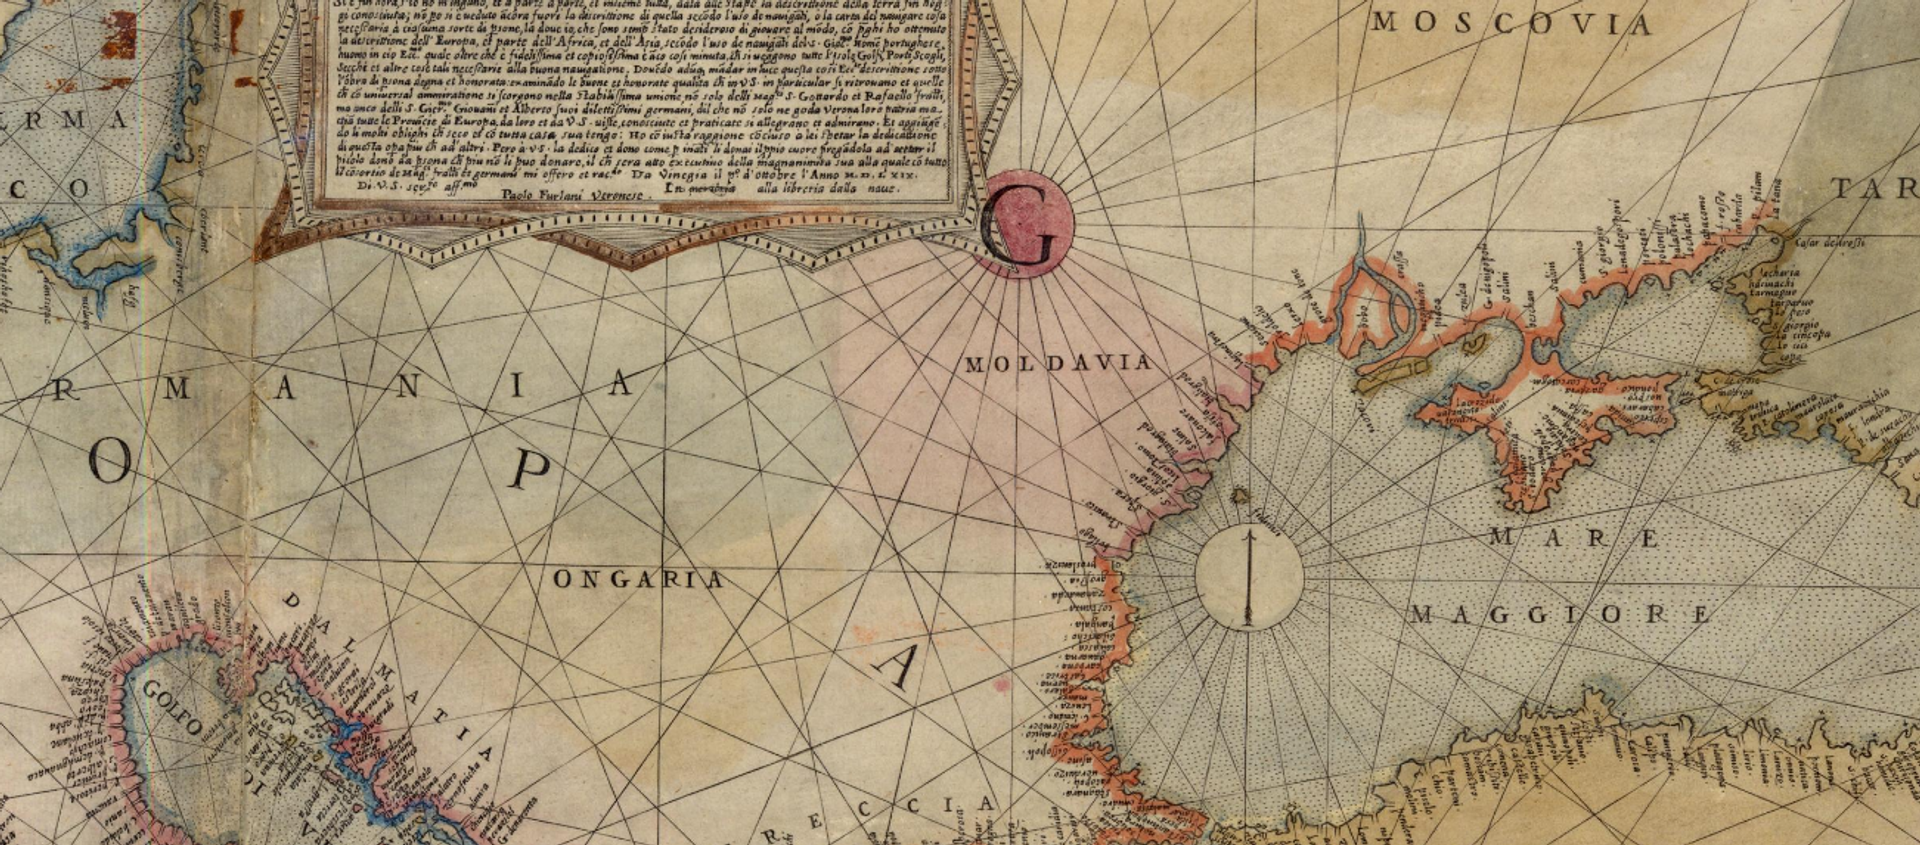 Молдавия на карте Европы П.Форлани, 1569 год. - Sputnik Молдова, 1920, 21.02.2021